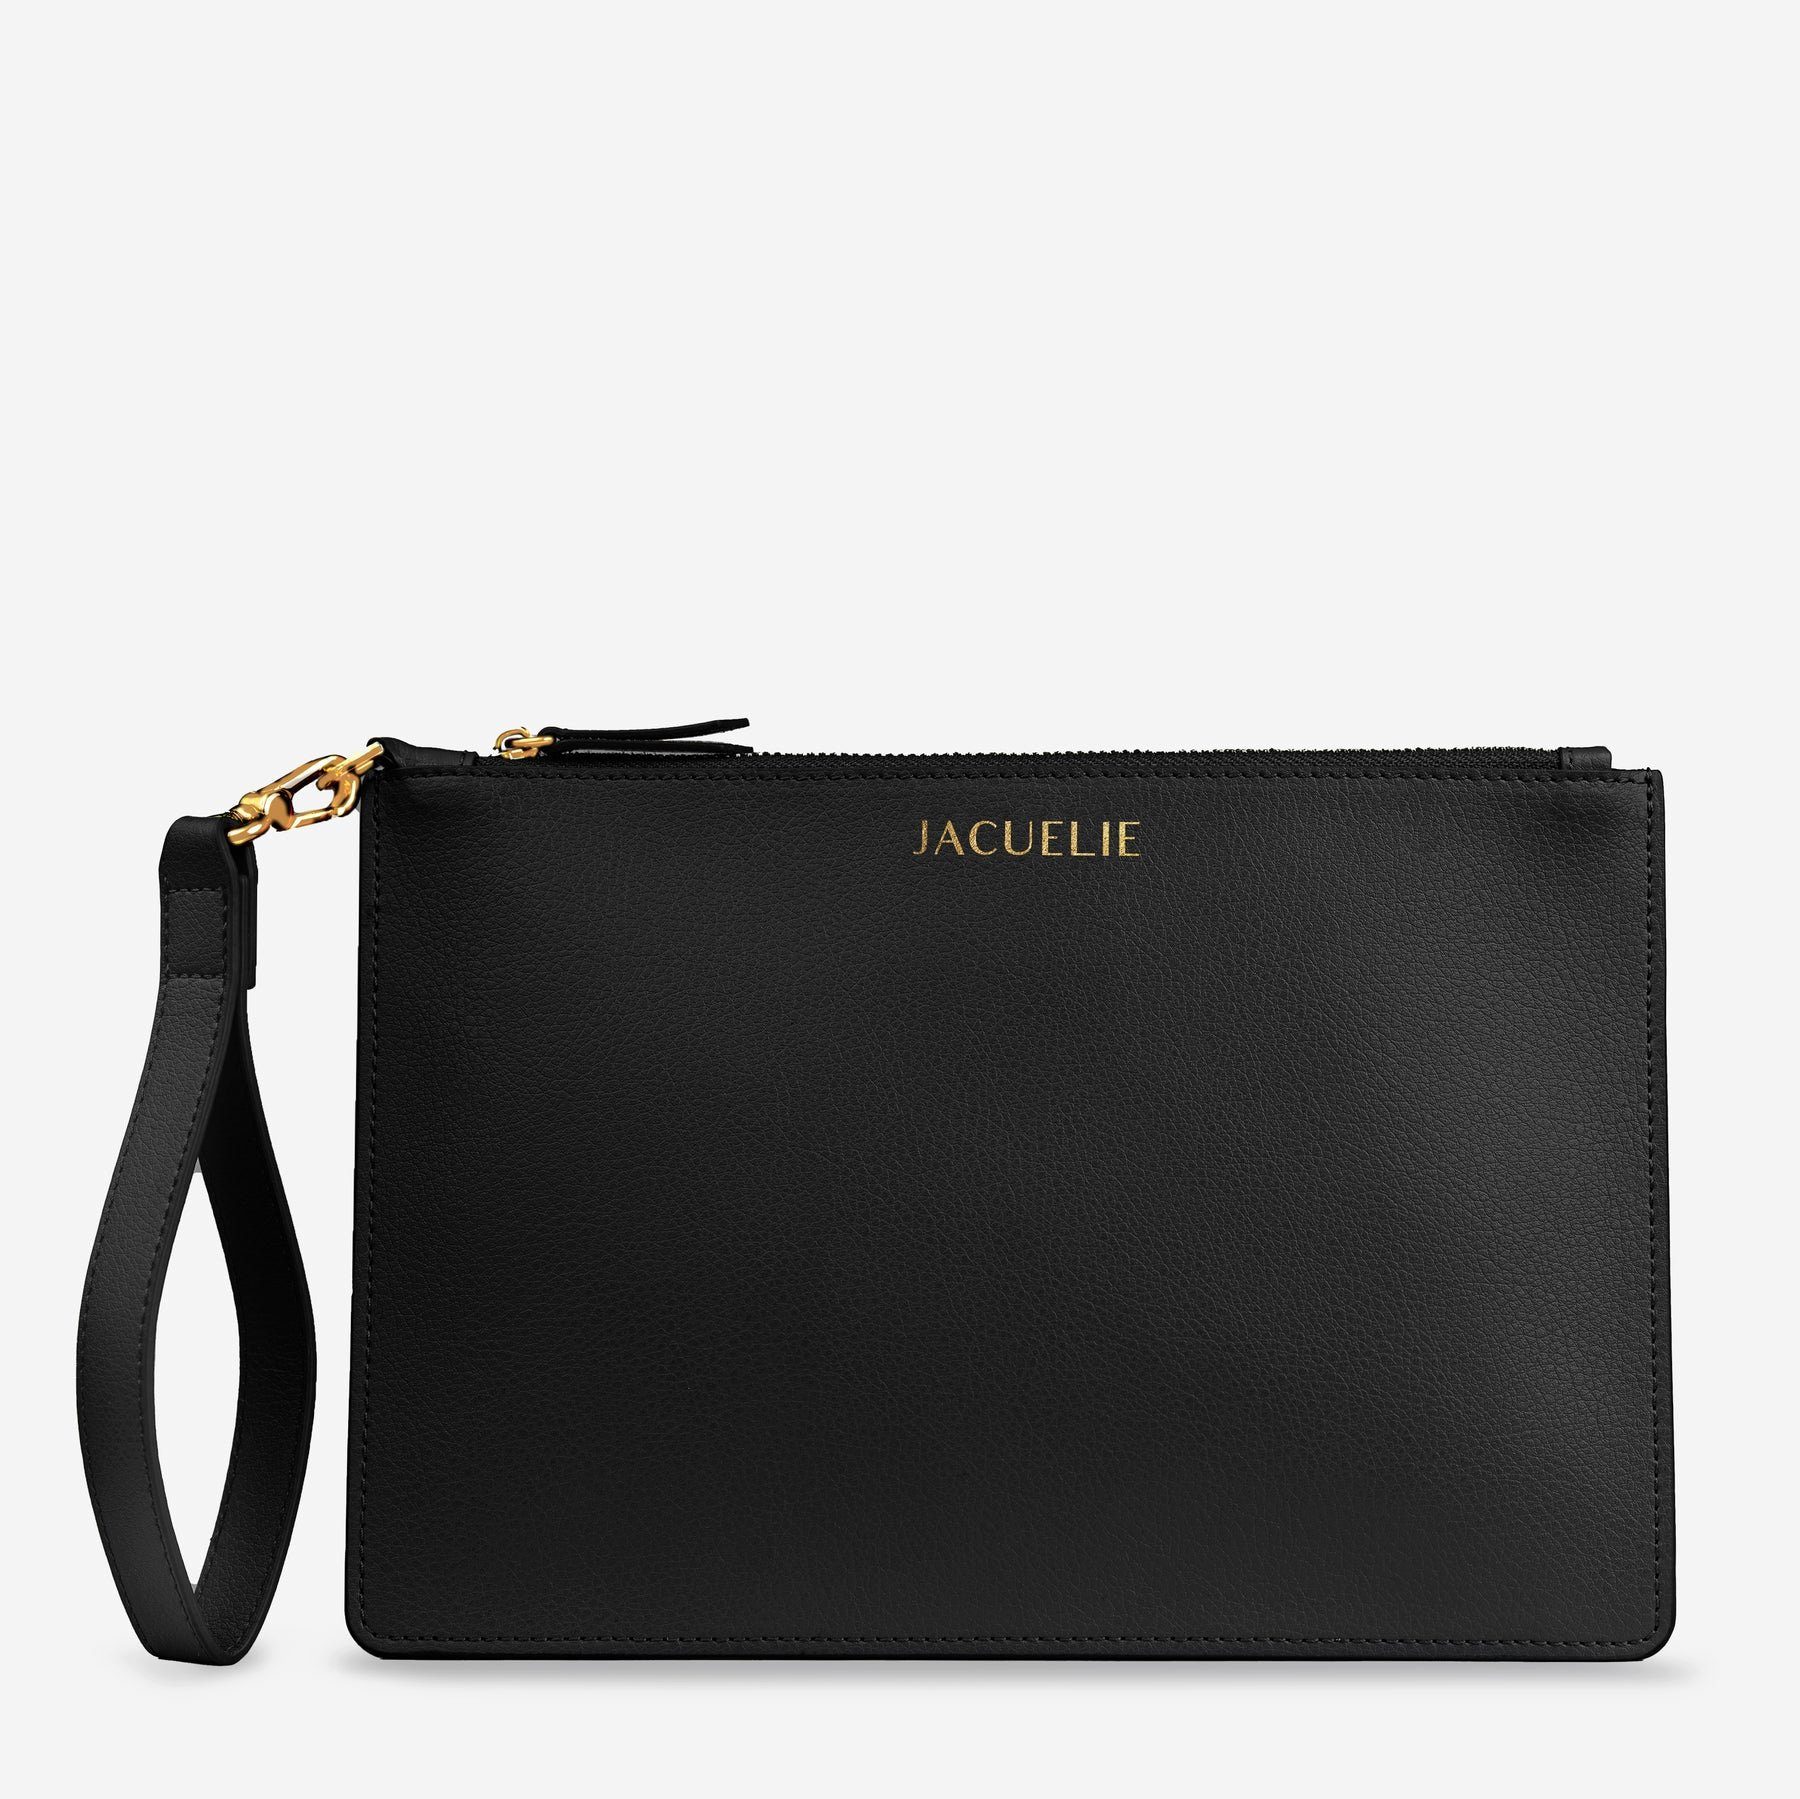 JACUELIE Clutch Эко-товарe Abendtasche Handtasche Frauen Umschlag Clutch Tasche, höchste Verarbeitungsqualität, Bestseller